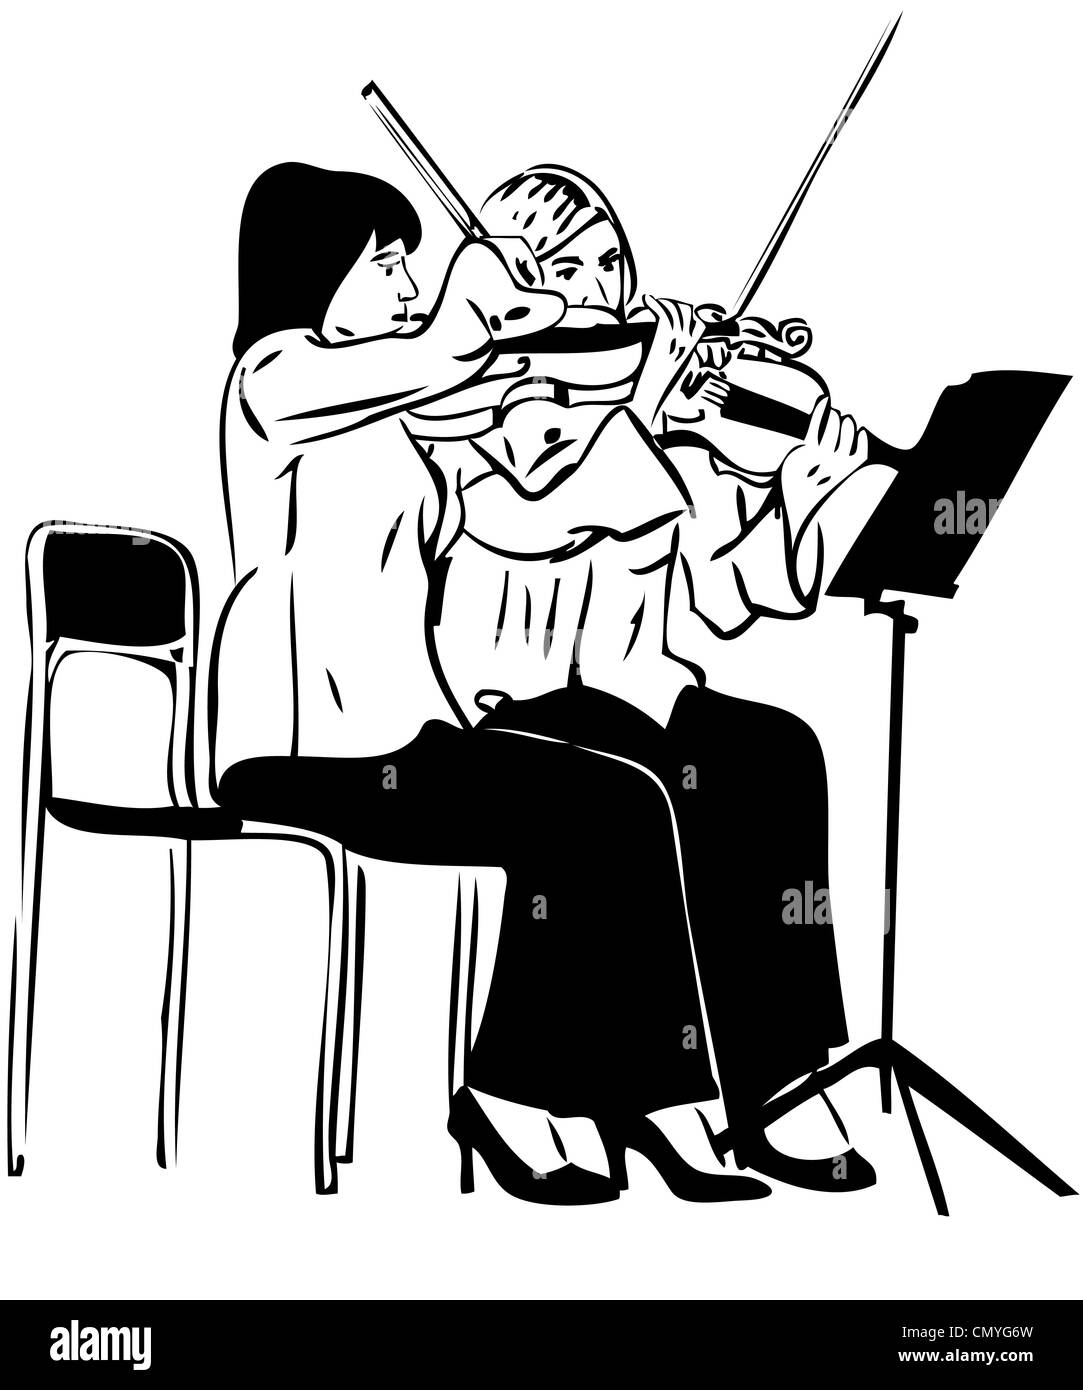 Un boceto de dos niñas jugando en el fiddle Foto de stock